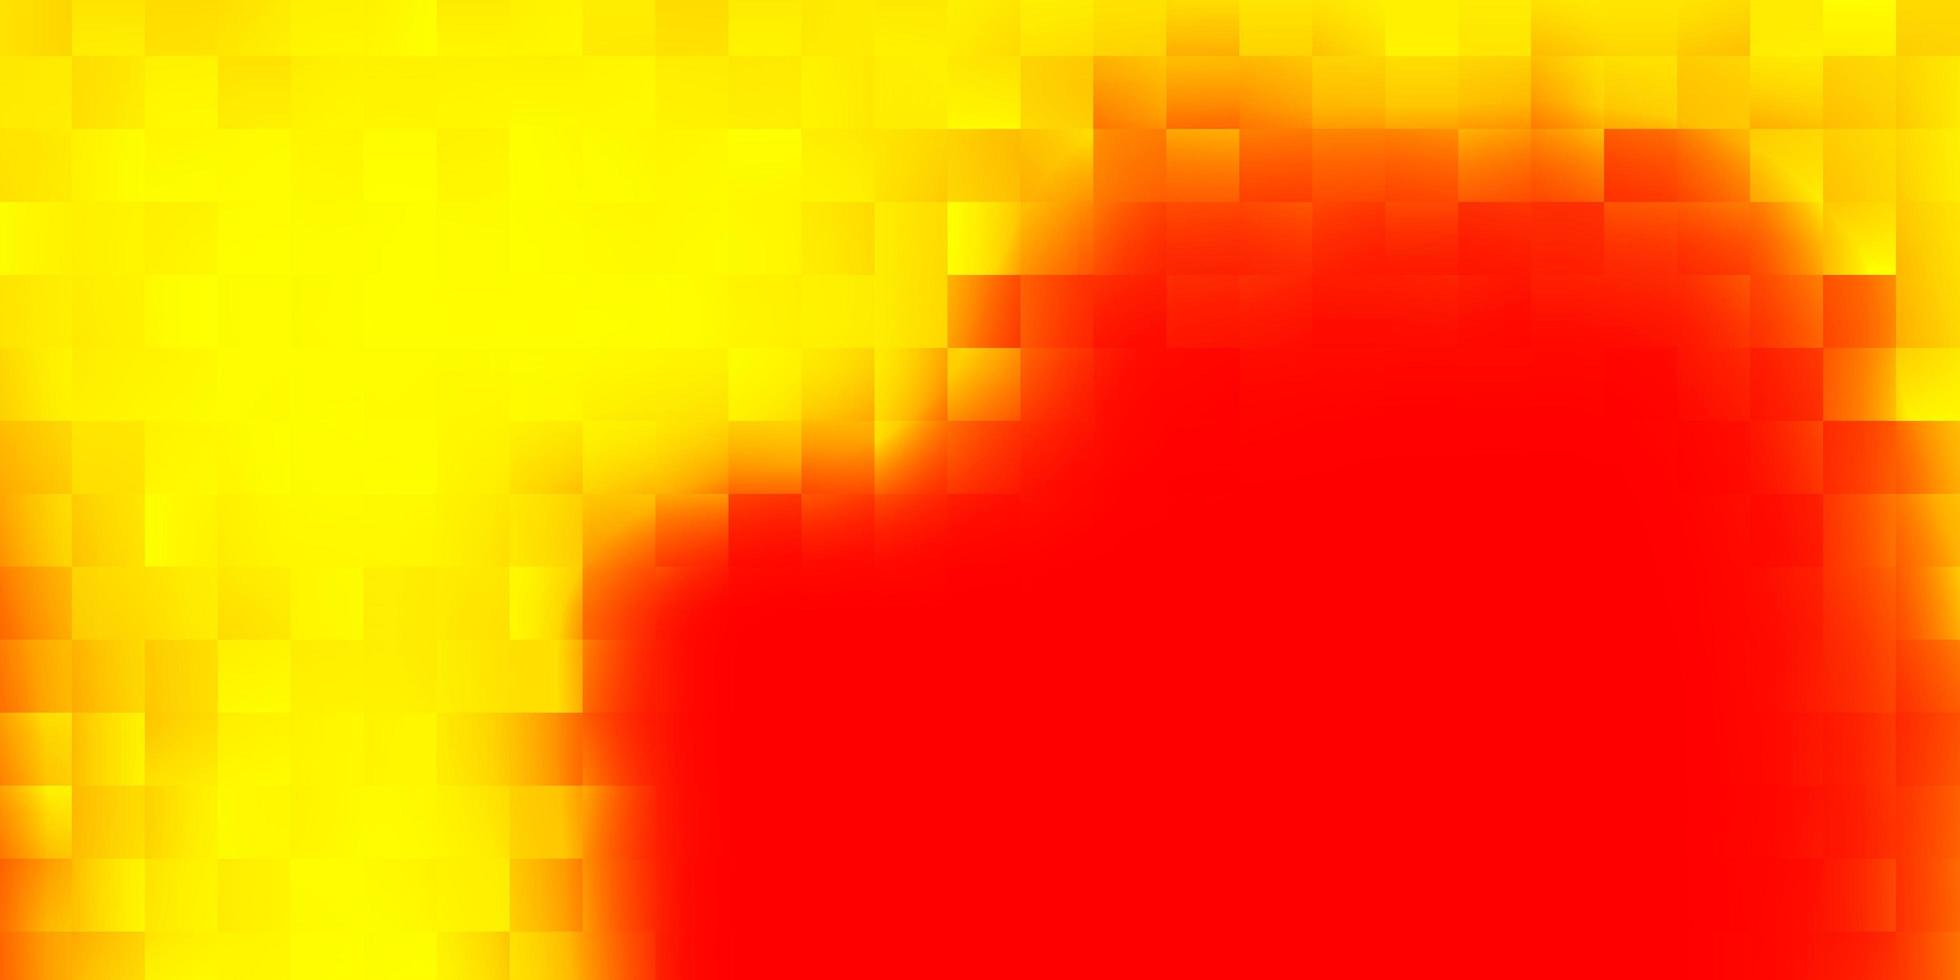 telón de fondo de vector rojo, amarillo claro en estilo rectangular.